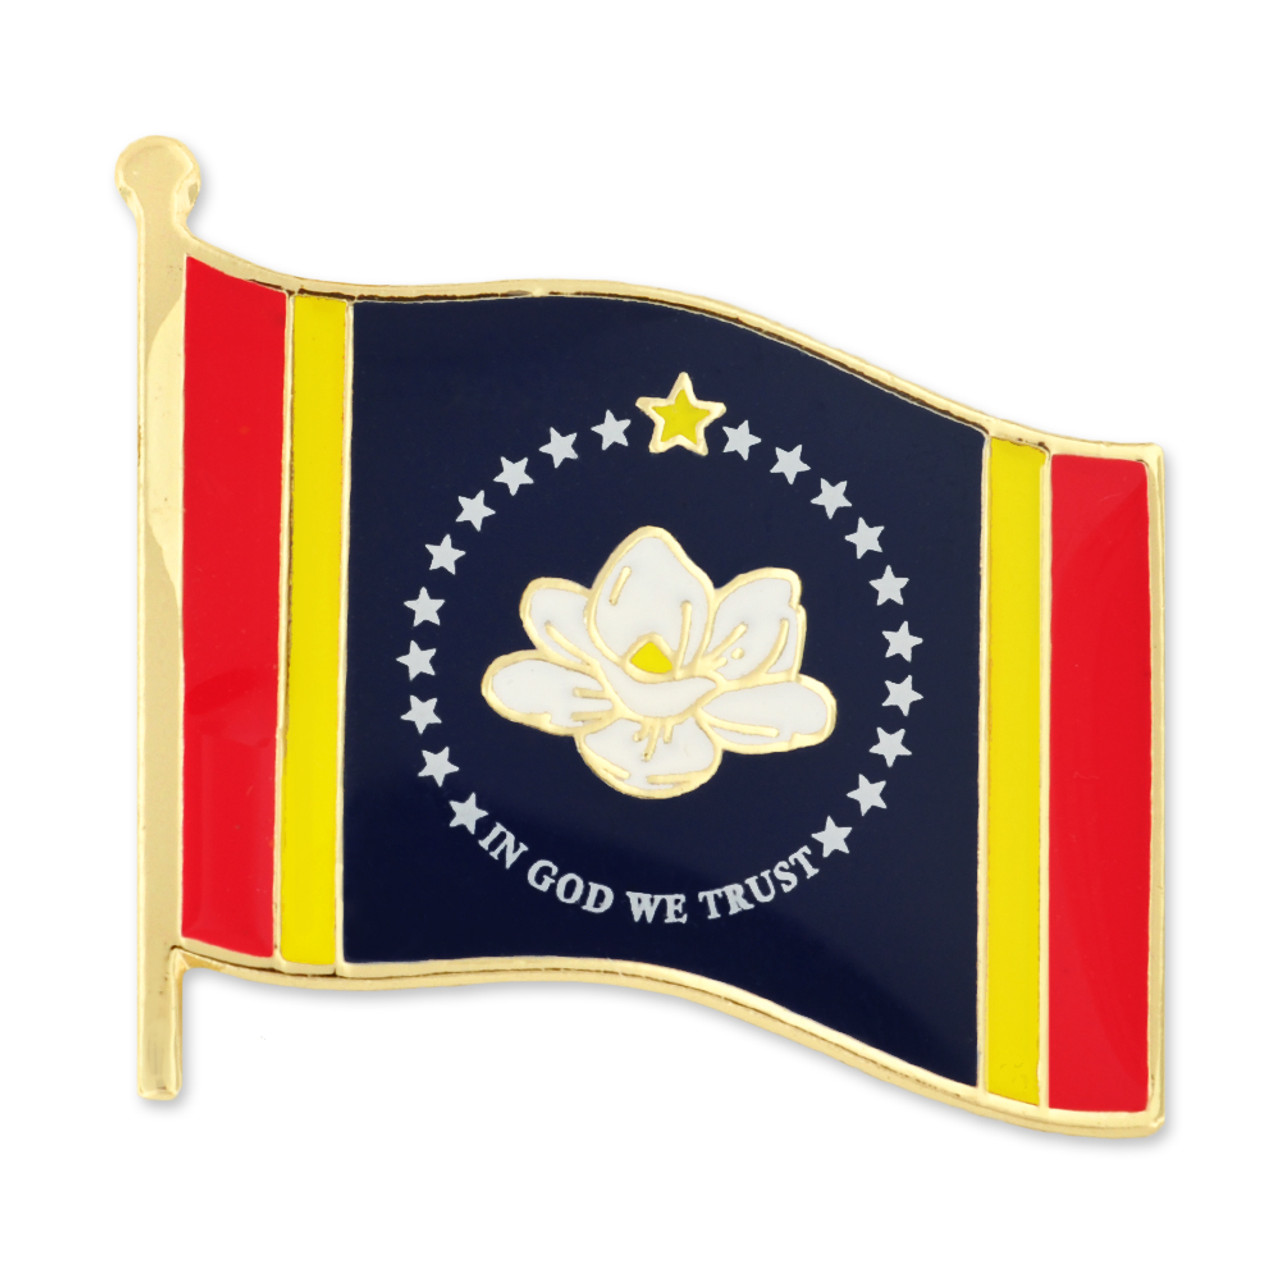 Mississippi State Mascot Pin